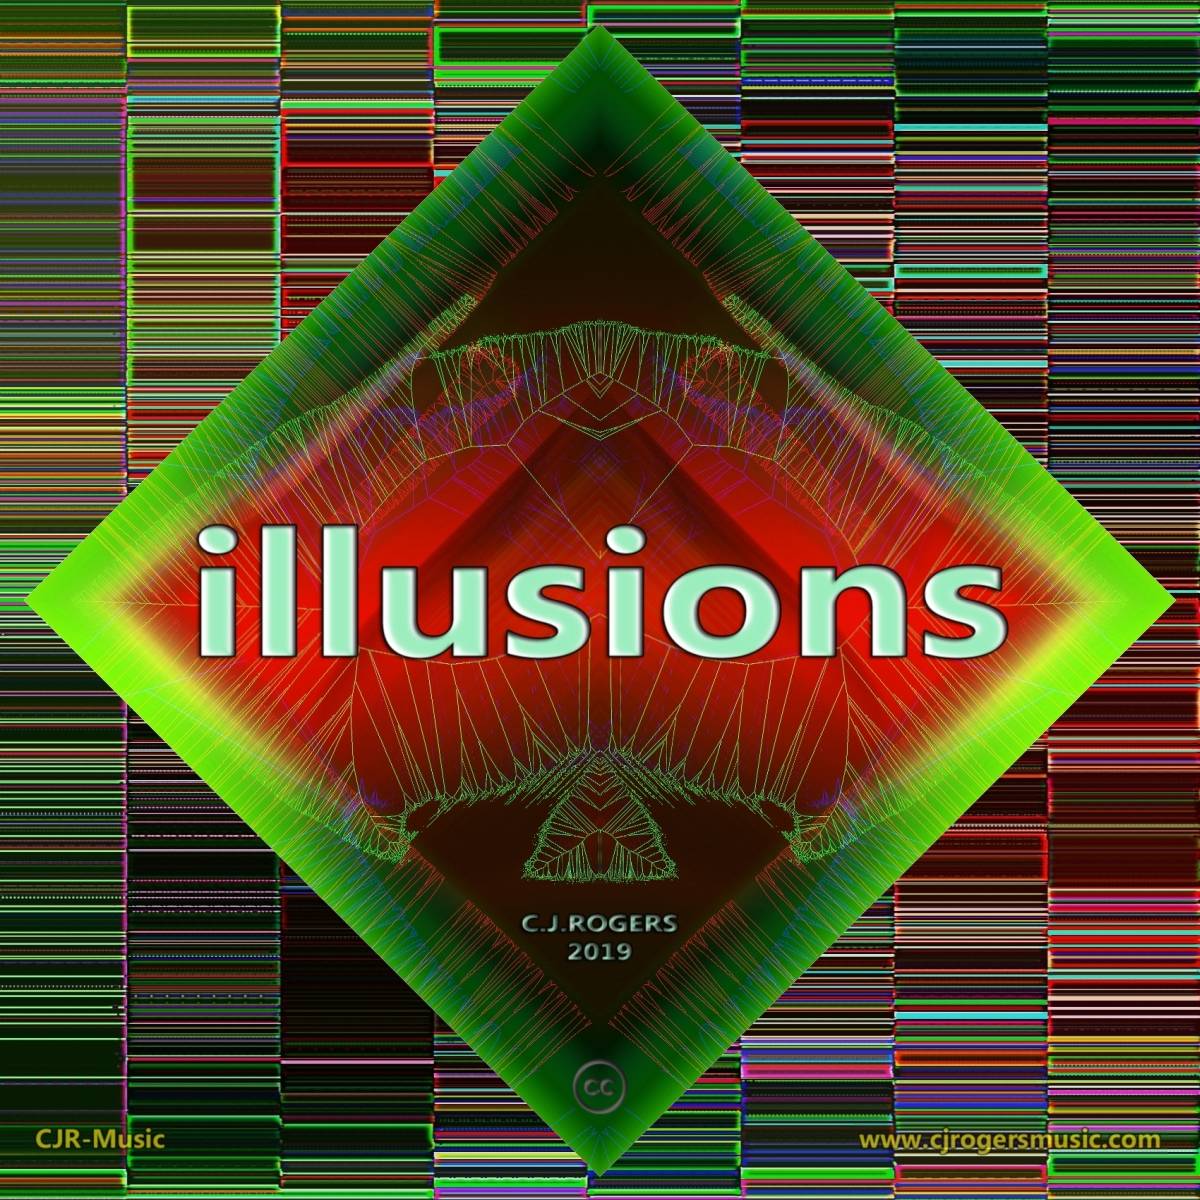 illusions - Fullsize Cover Art